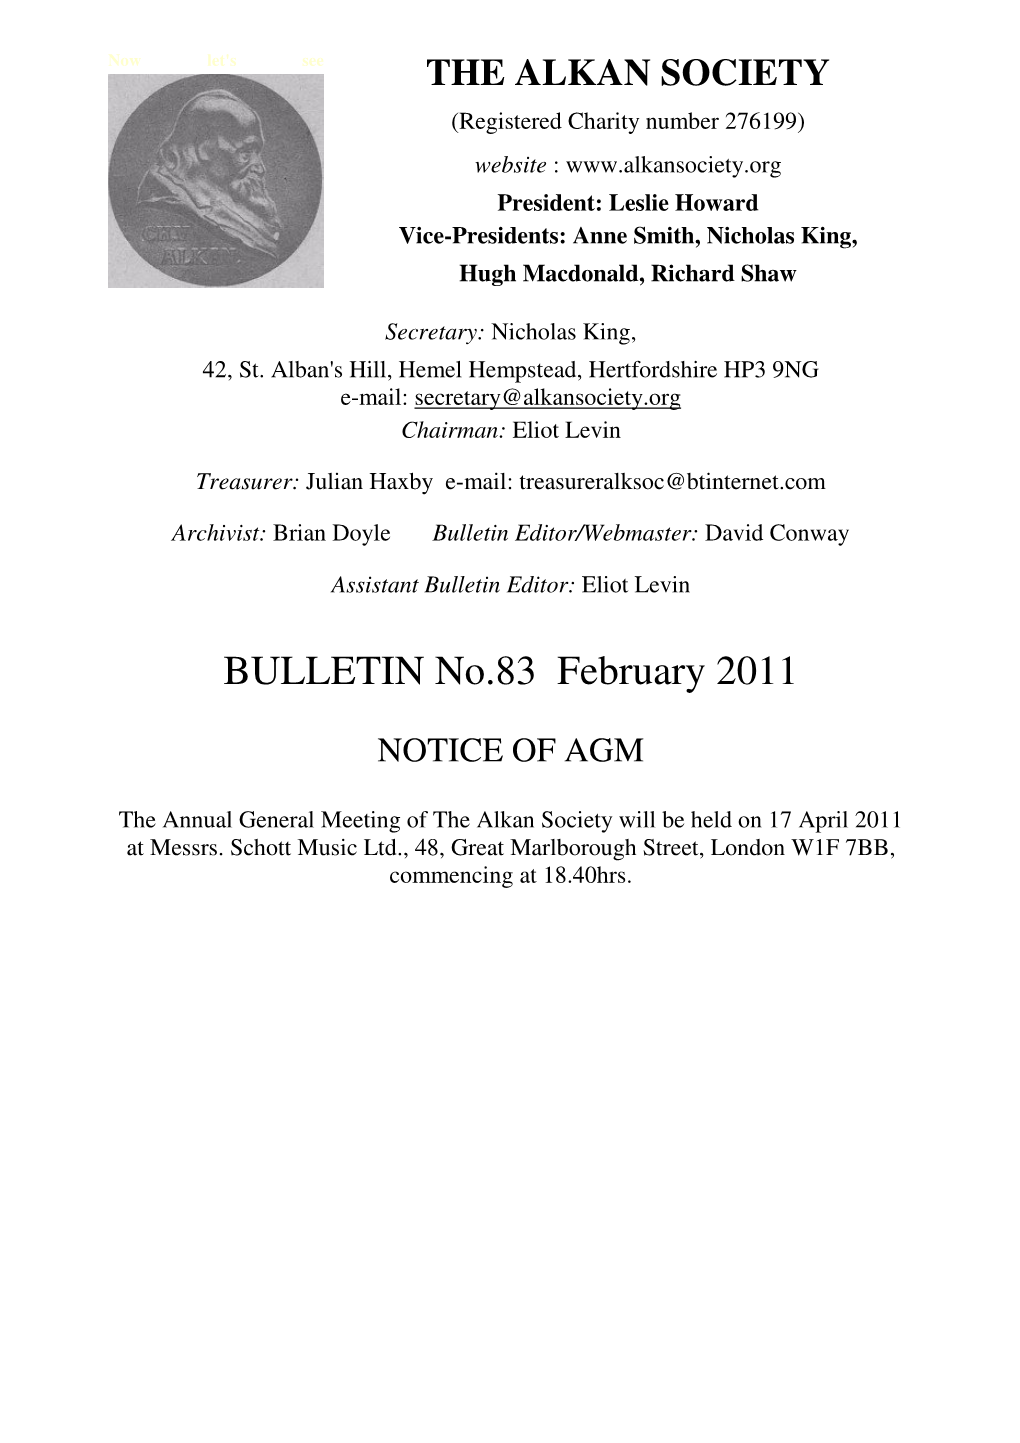 BULLETIN No.83 February 2011